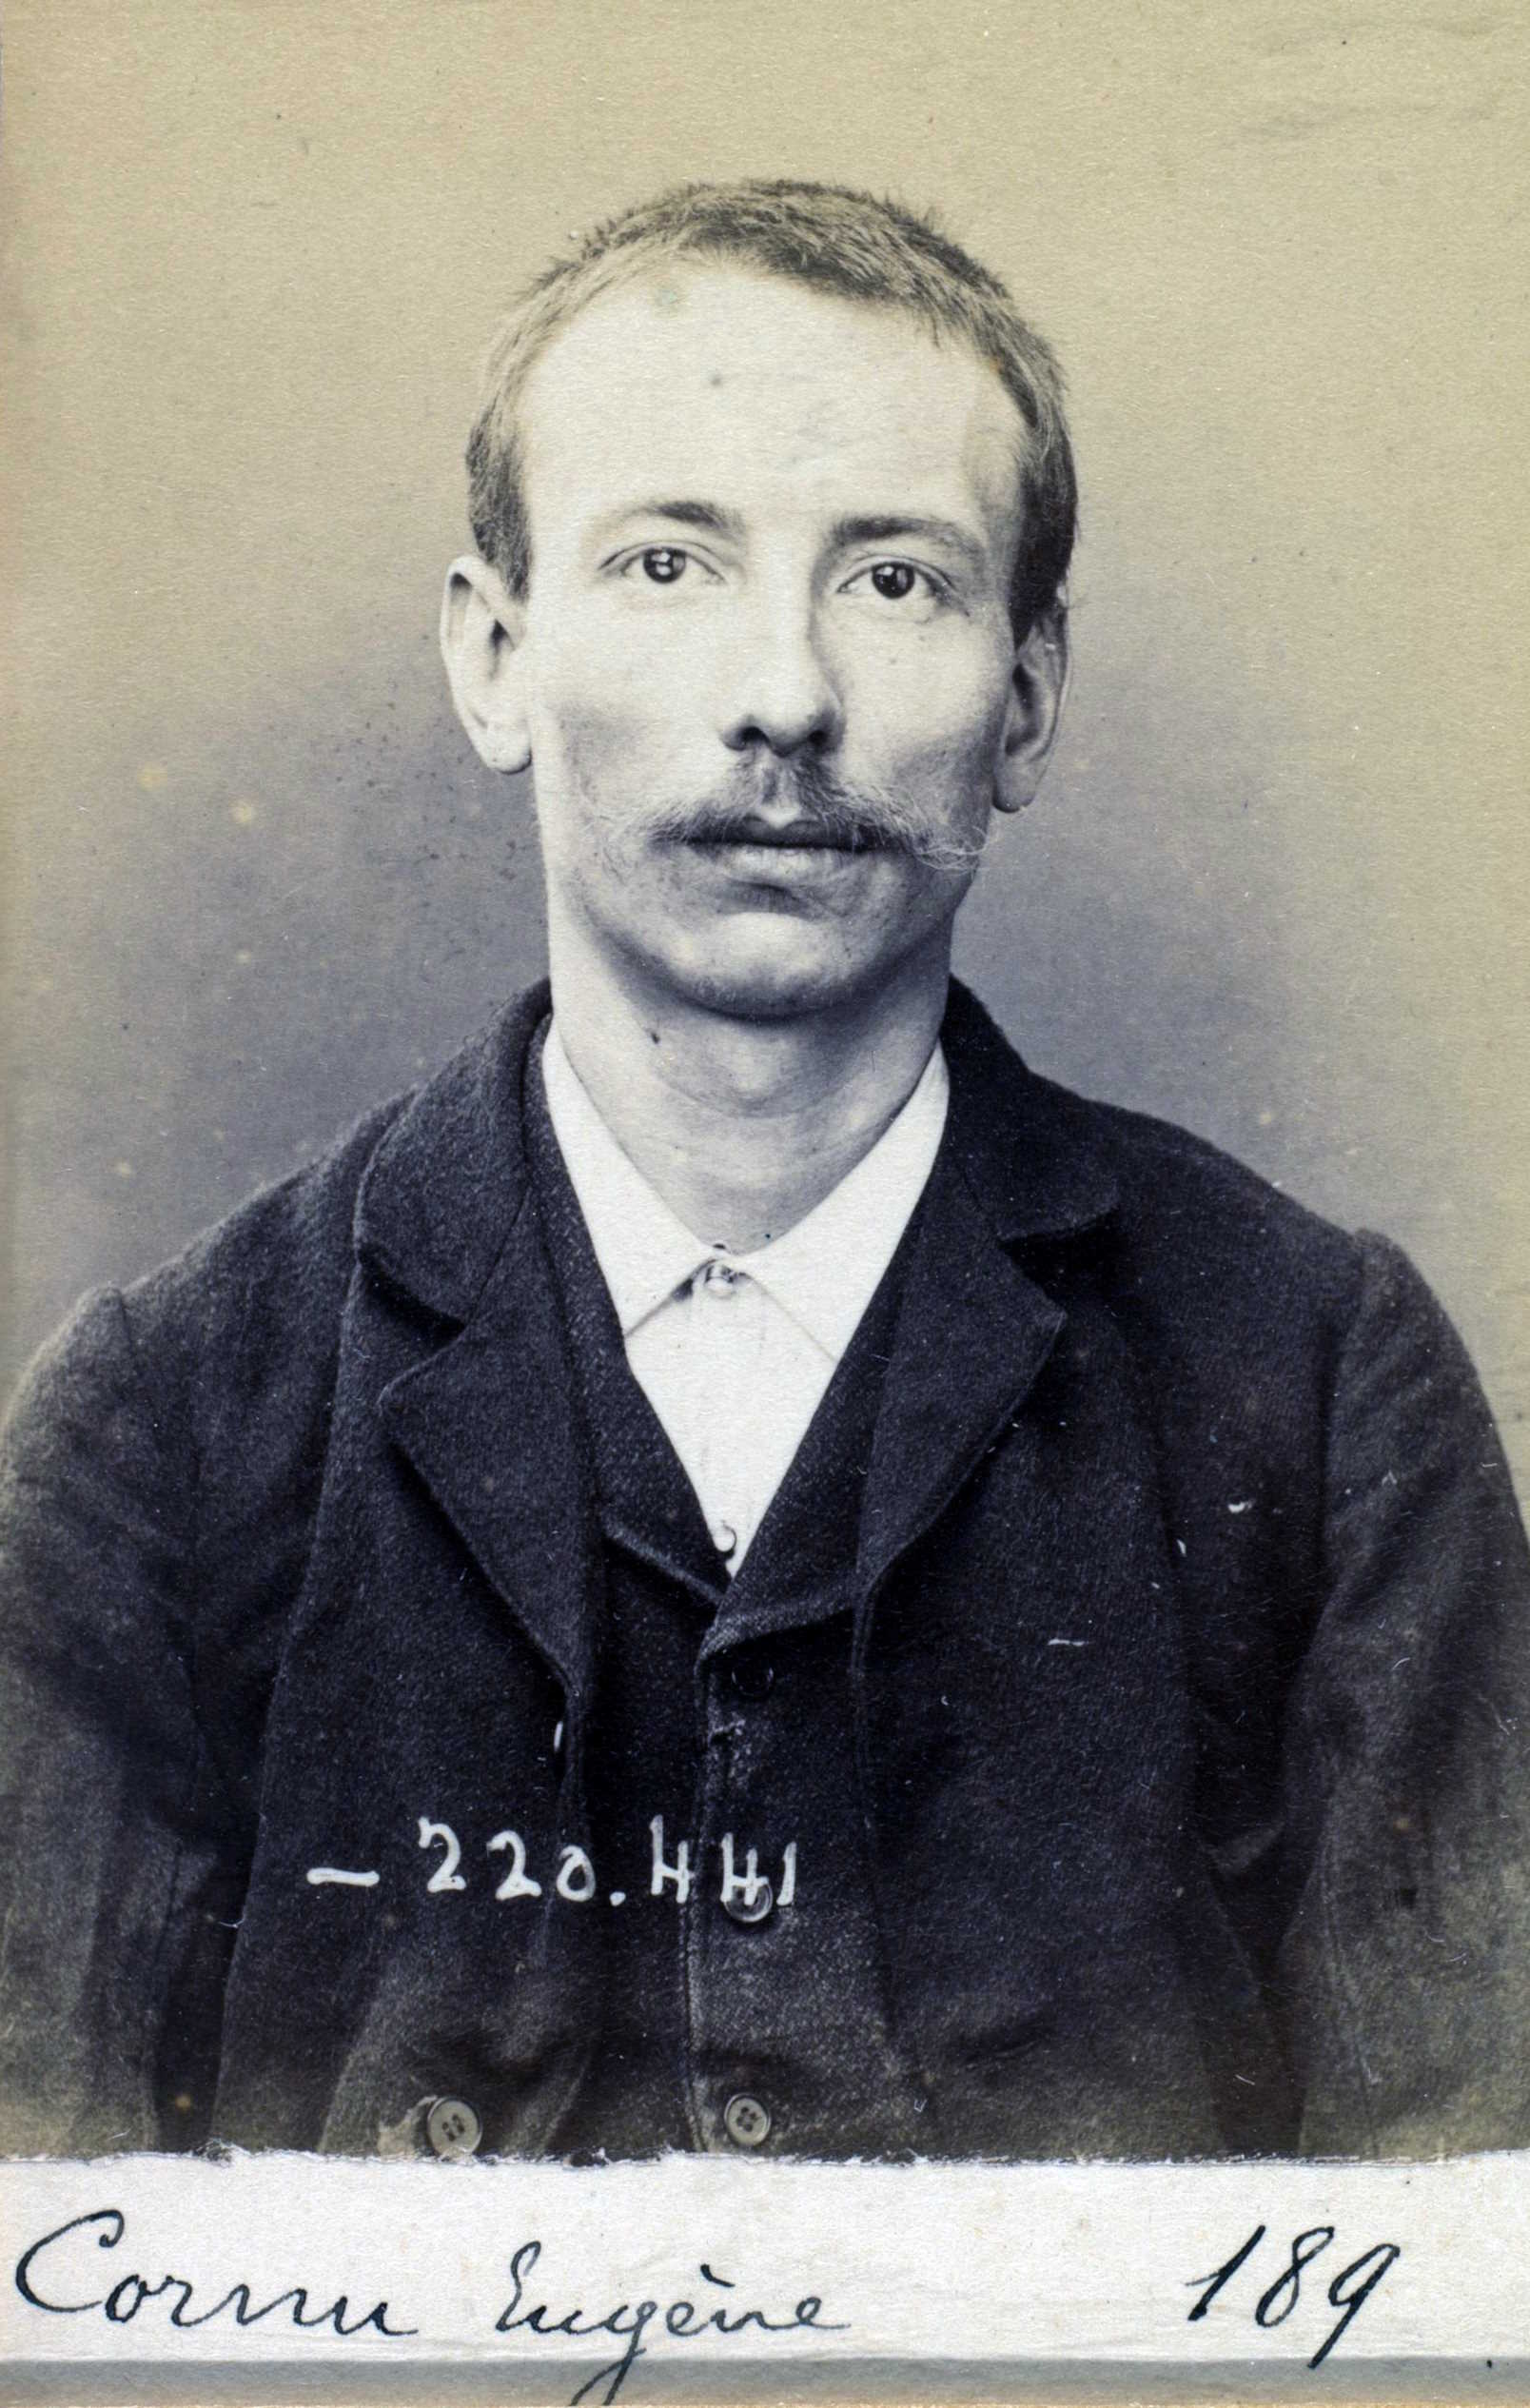 Foto policíaca d'Eugène Cornu (2 de juliol de 1894)